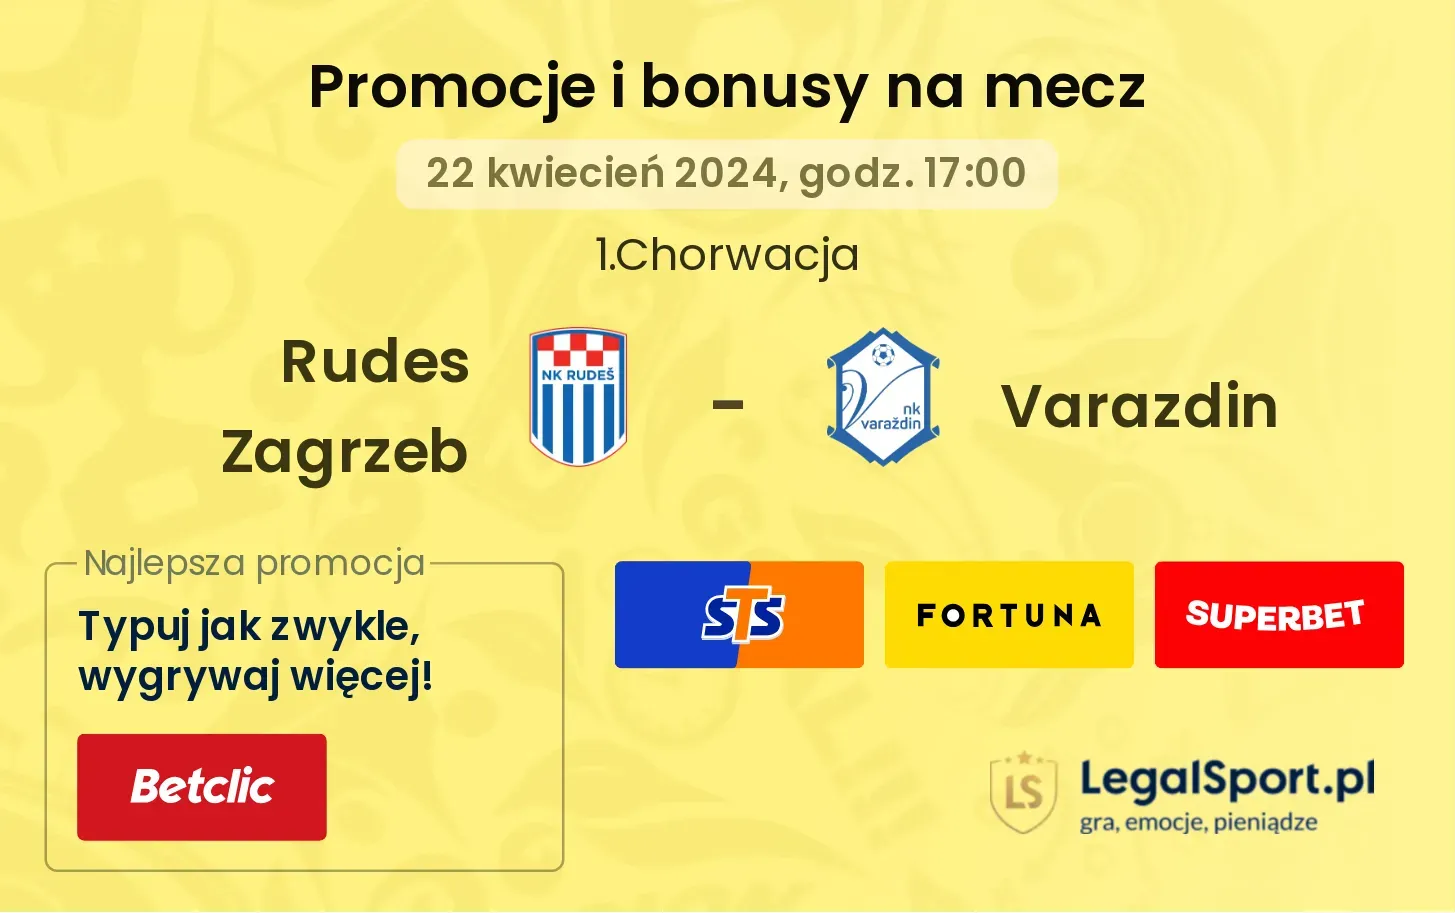 Rudes Zagrzeb - Varazdin promocje bonusy na mecz